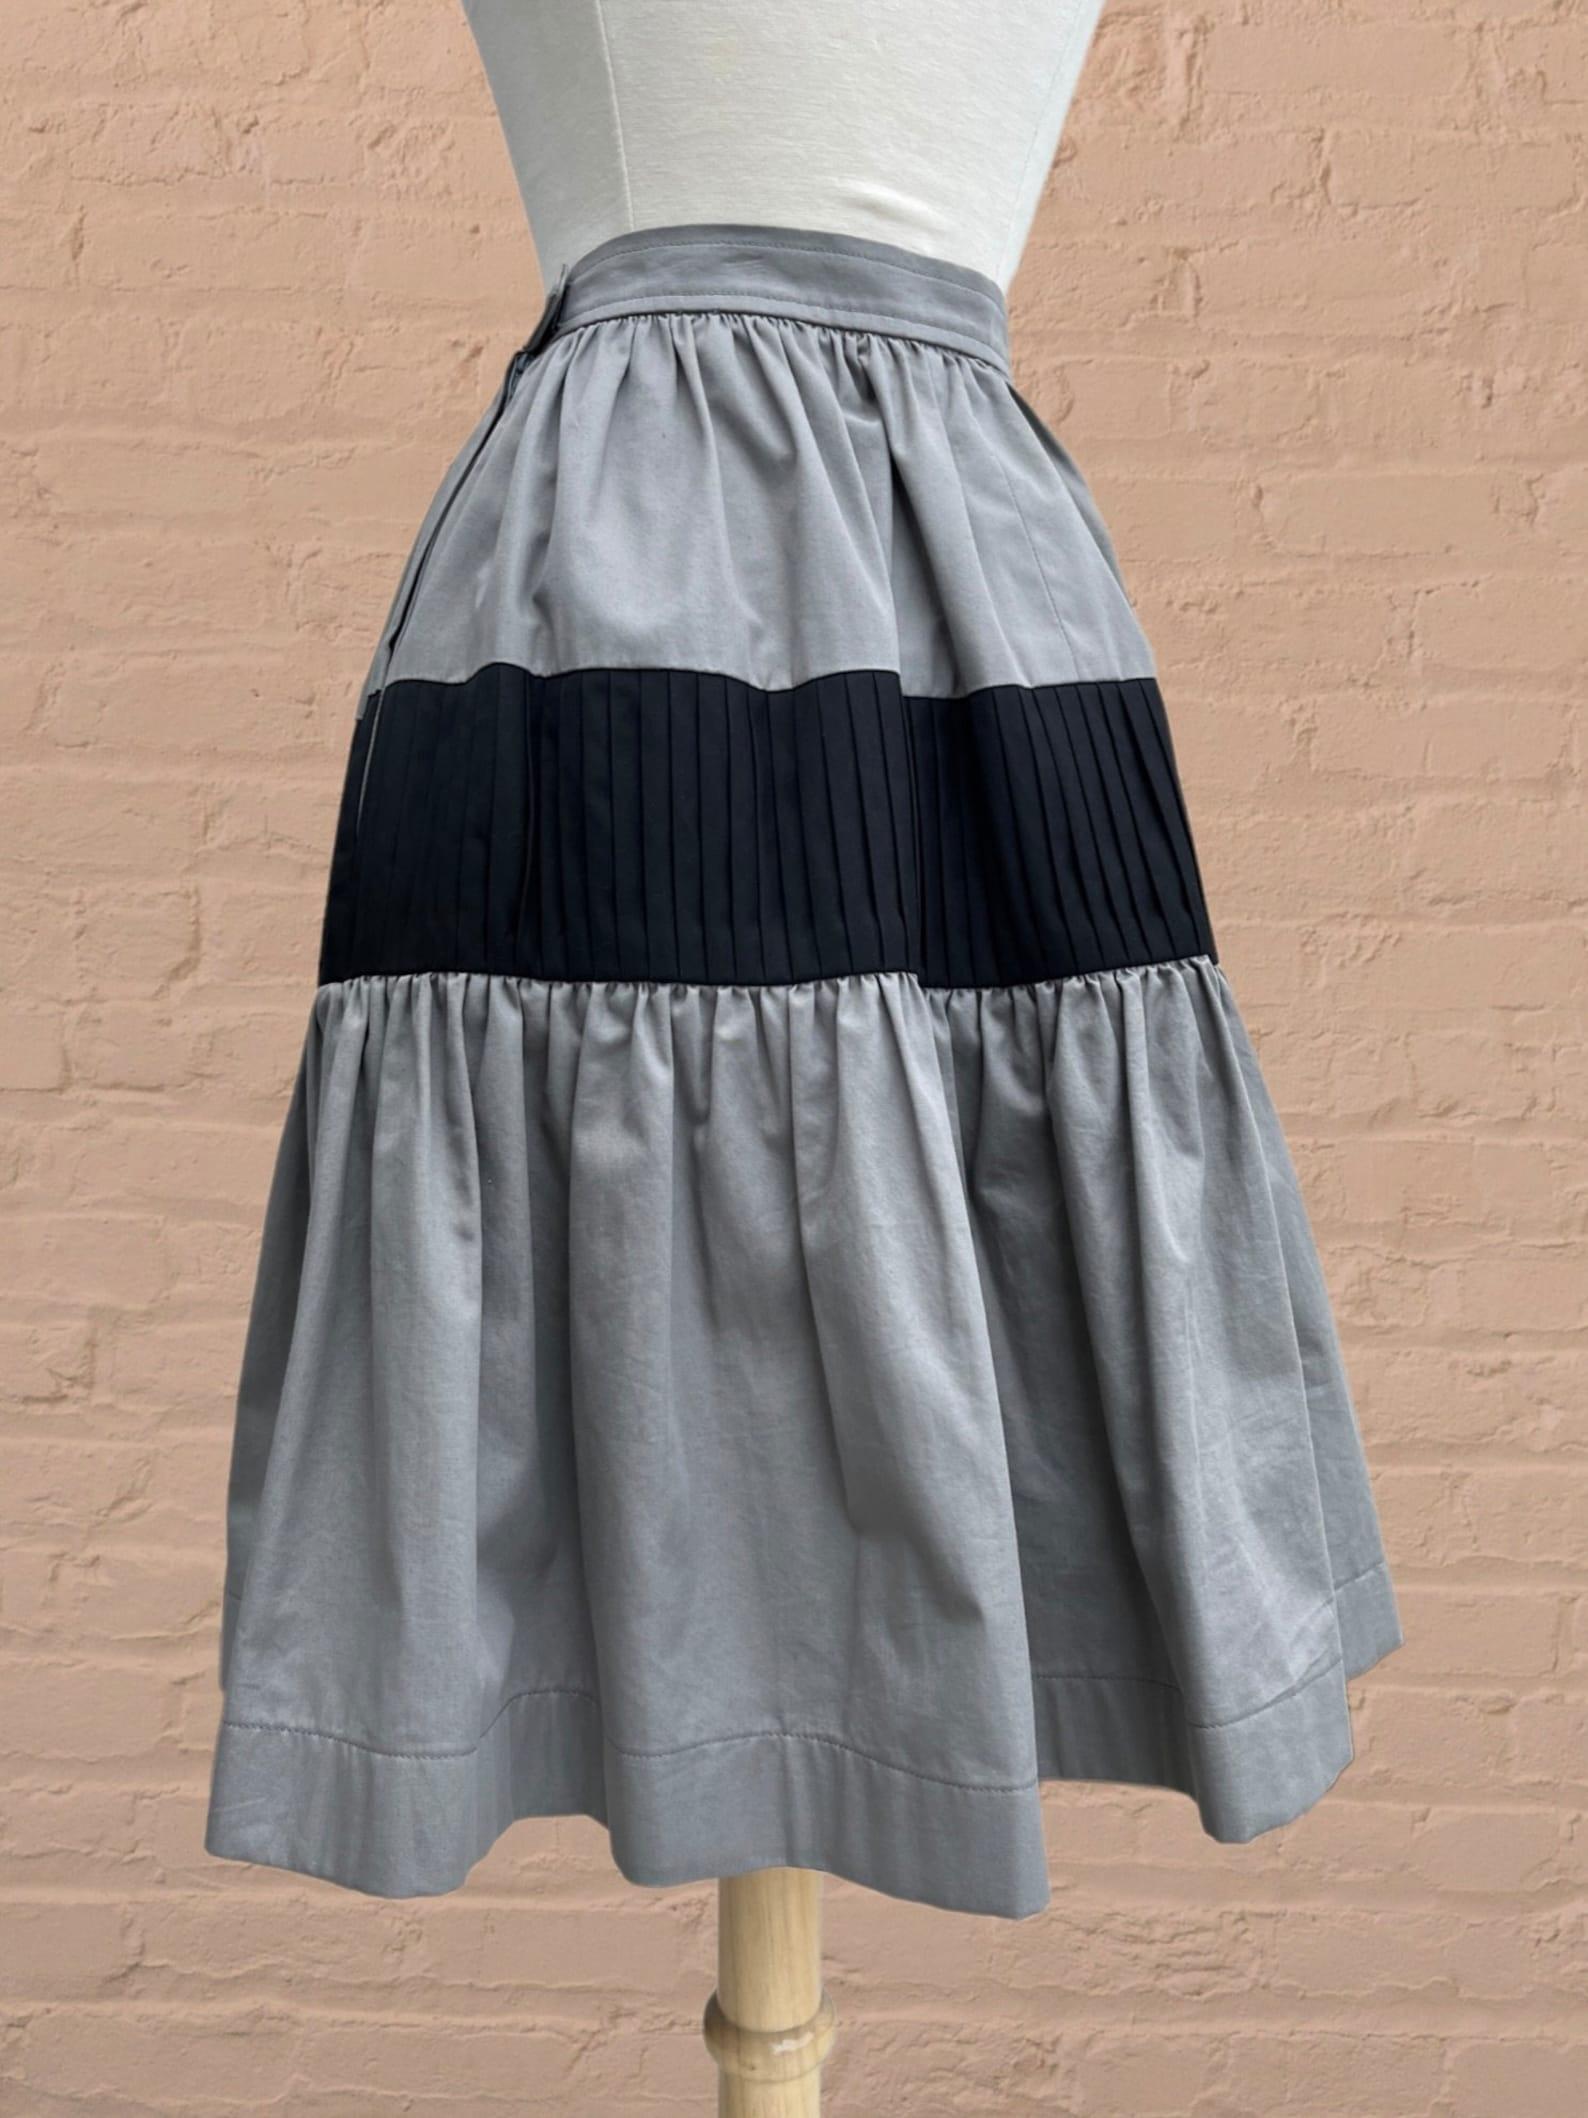 Yves Saint Laurent colorblock skirt For Sale 2